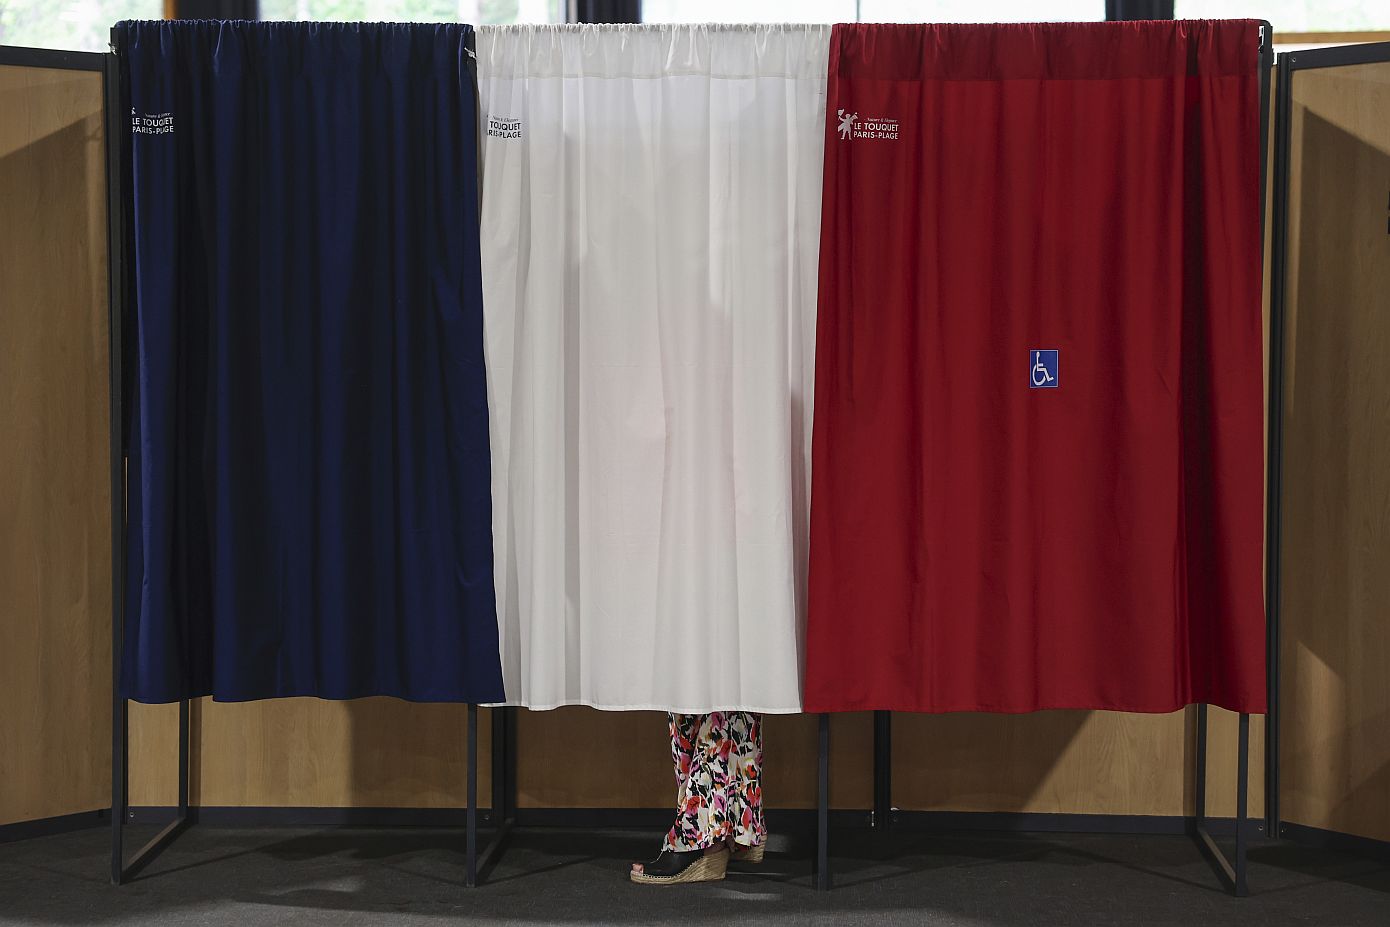 Ιστορικό ρεκόρ προσέλευσης στις βουλευτικές εκλογές στη Γαλλία &#8211; Τα πέντε επικρατέστερα σενάρια για το αποτέλεσμα